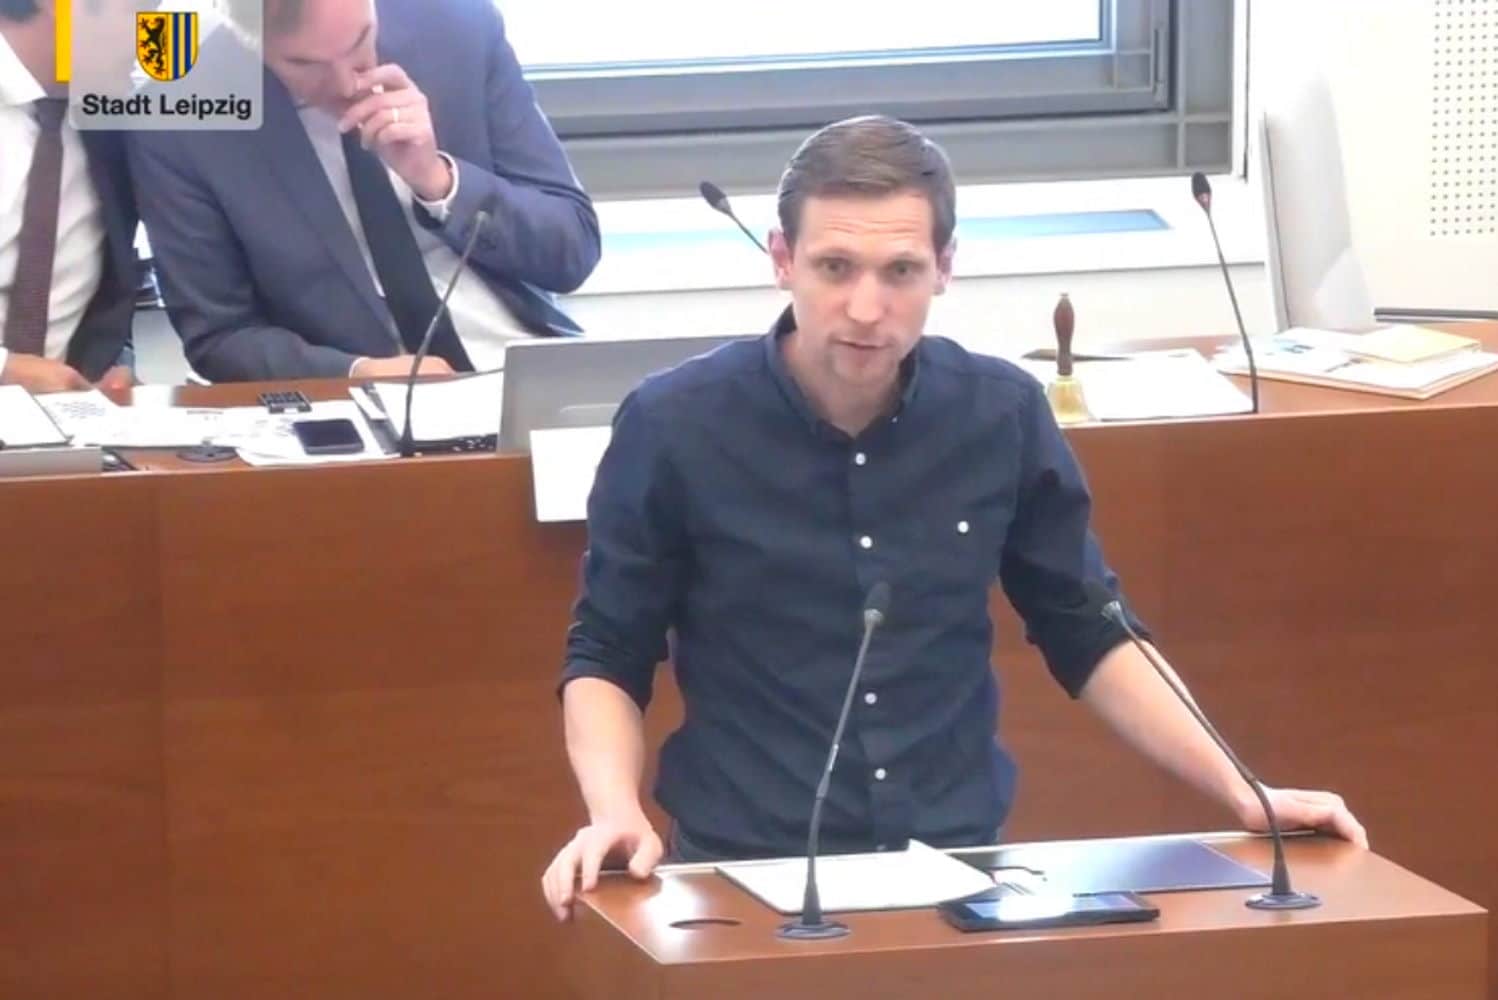 Stadtbezirksbeirat Tobias Möller bringt den Antrag zur "kleinen, feinen Merse" ein. Foto: Livestream der Stadt Leipzig, Screenshot: LZ